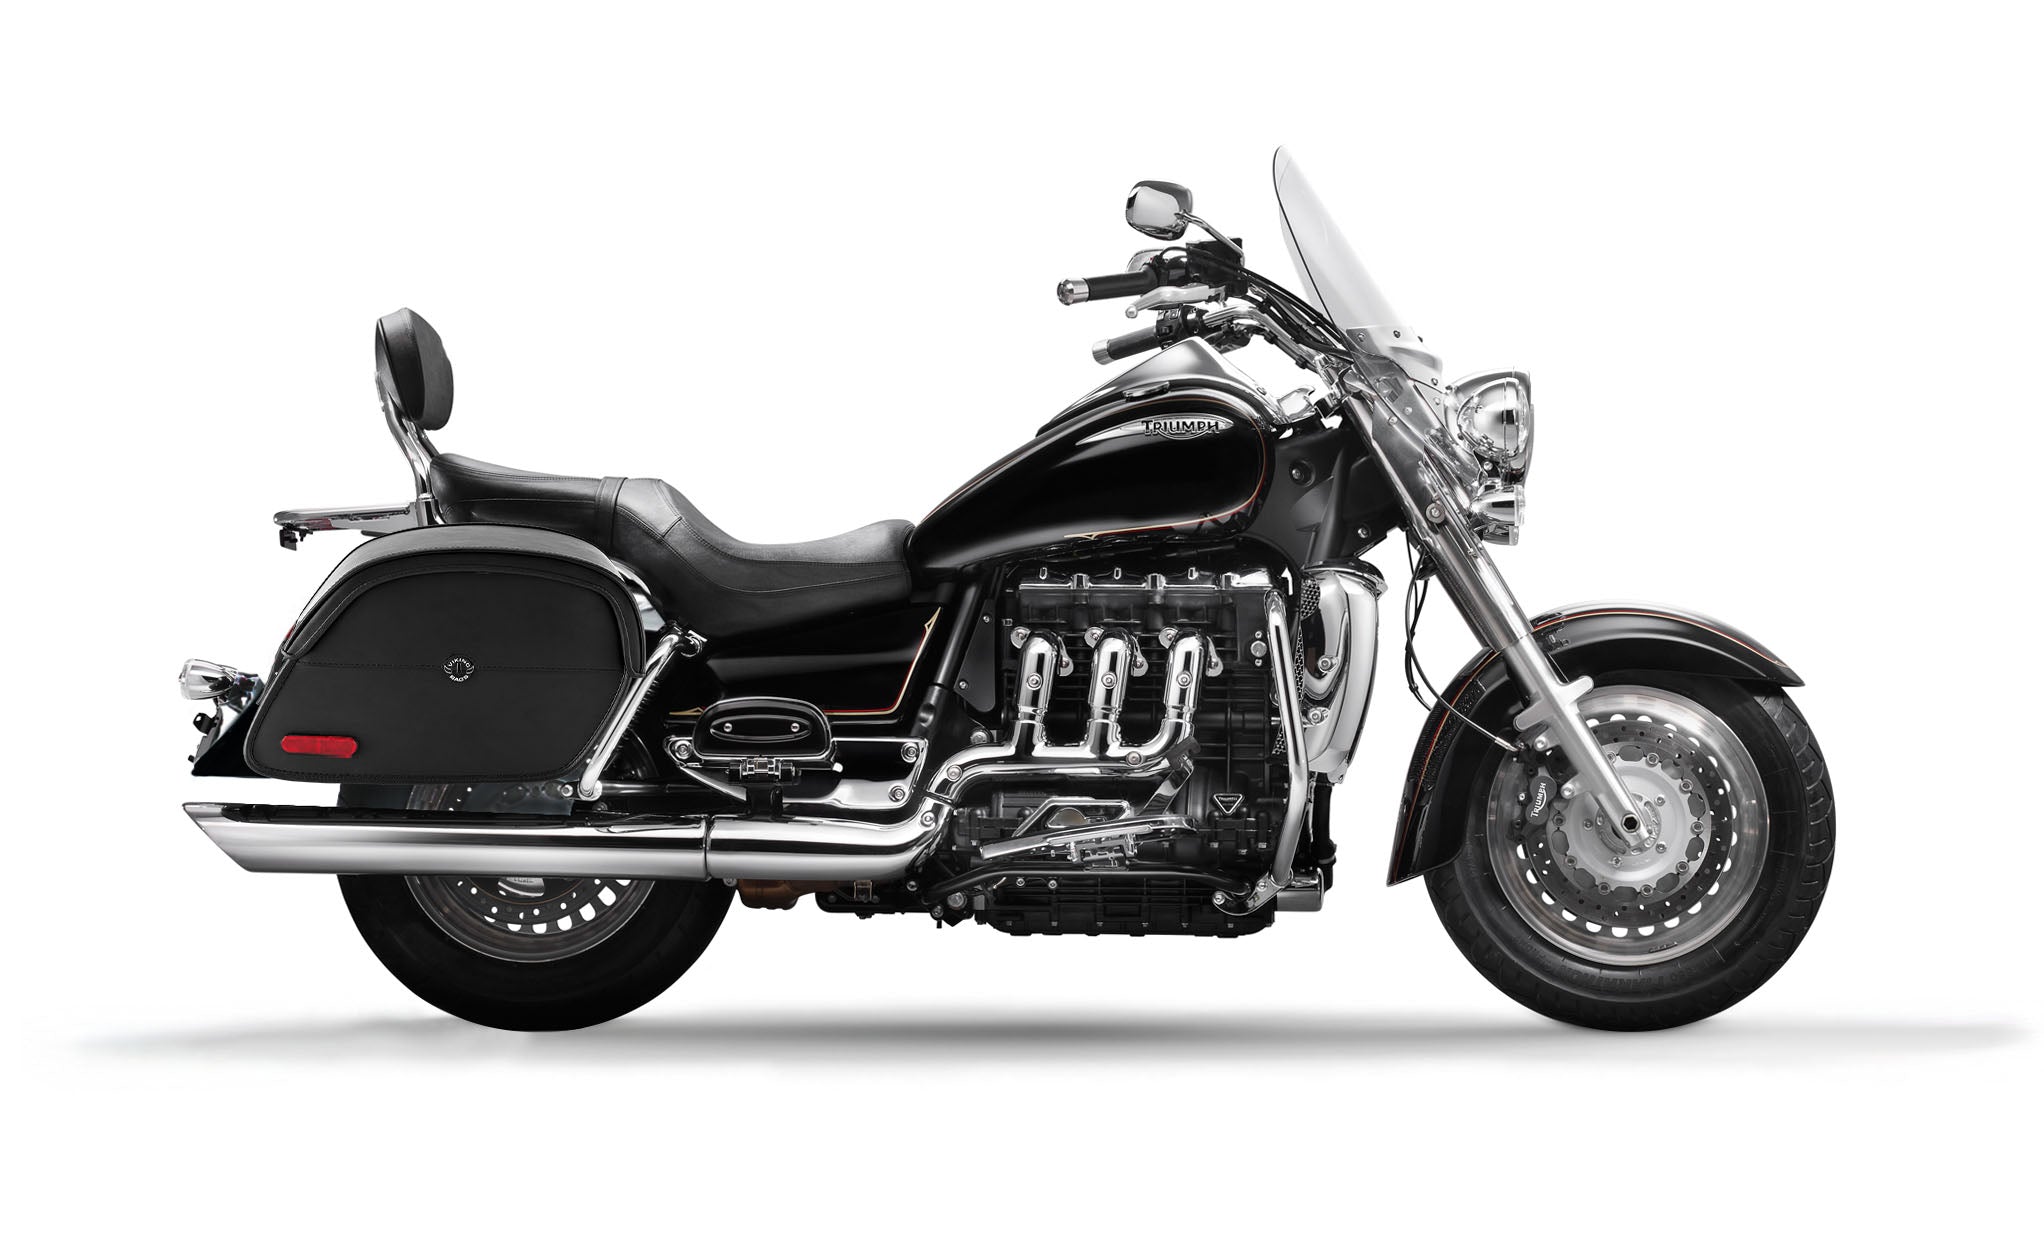 Viking California Large Triumph Rocket Iii Touring Leather Motorcycle Saddlebags on Bike Photo @expand